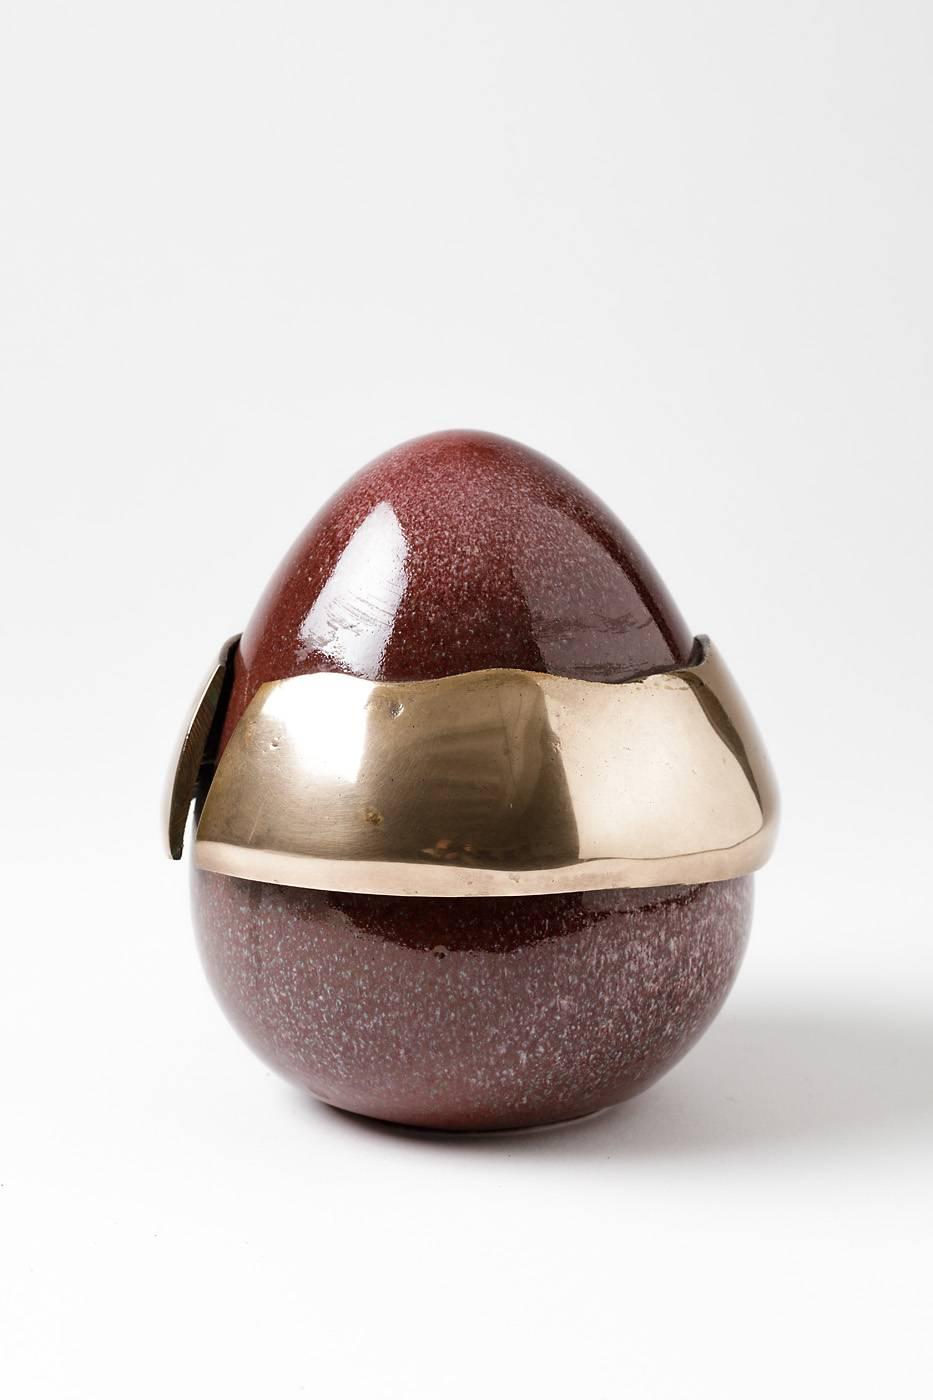 Elegante Eierform des Künstlers Tim Orr.

Porzellan mit roter Keramikglasur und einem Stück Bronze.

Perfekte Bedingungen und unter der Basis unterzeichnet.

um 1970.